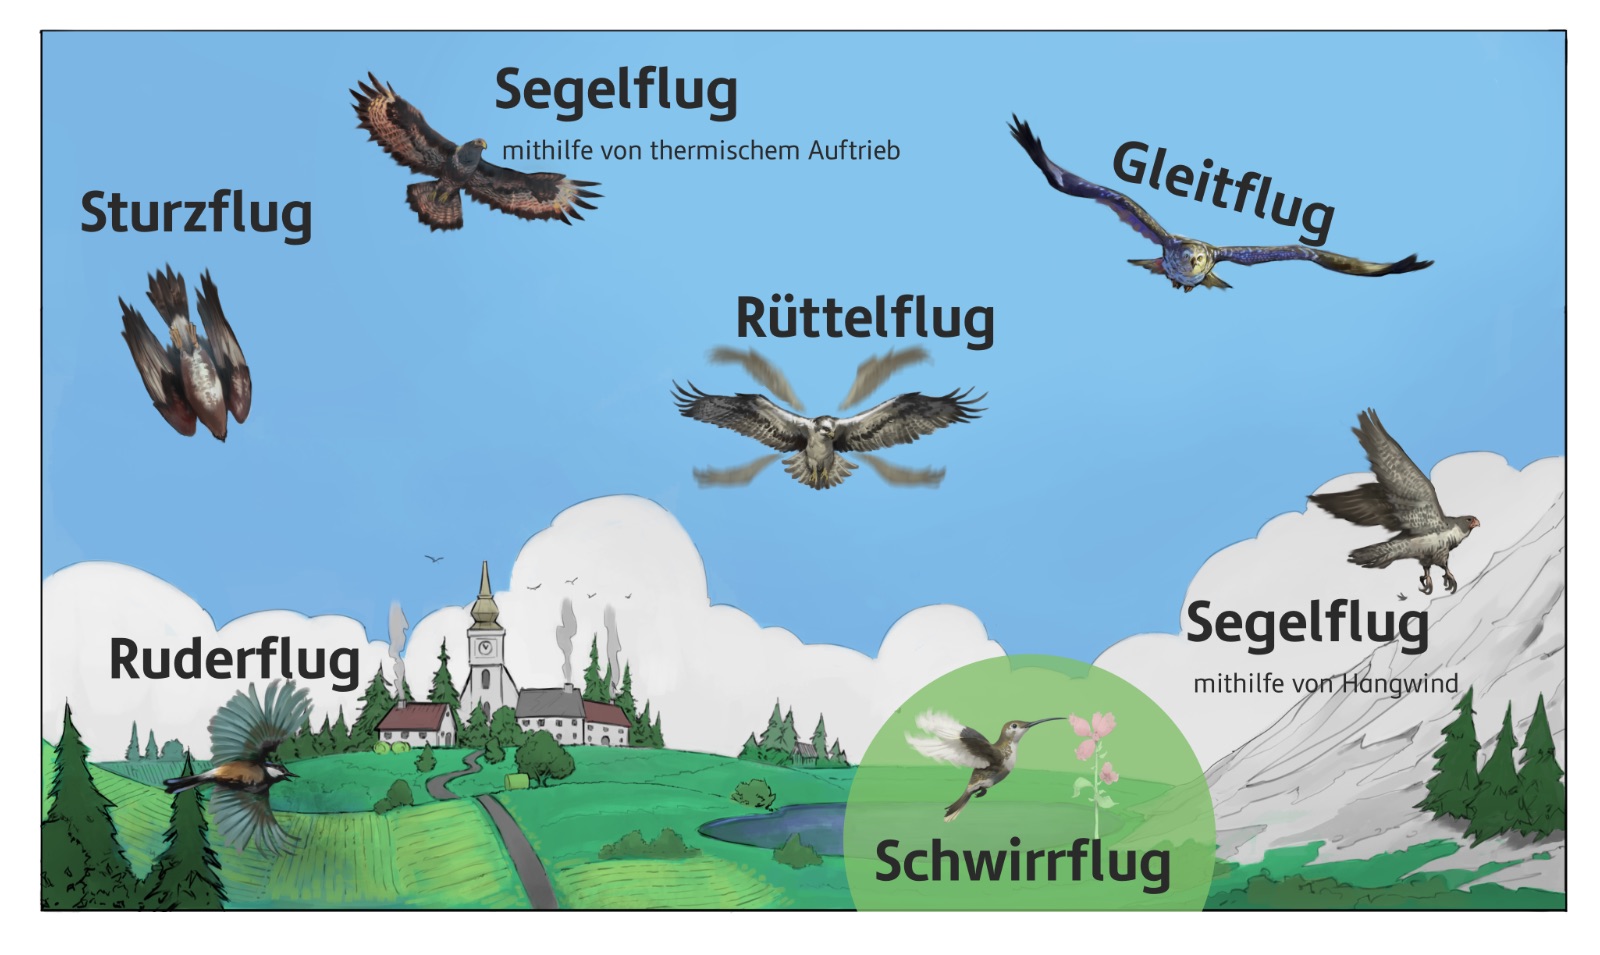 Flugarten der Vögel: Sturzflug, Segelflug, Gleitflug, Rüttelflug, Ruderflug, und Schwirrflug